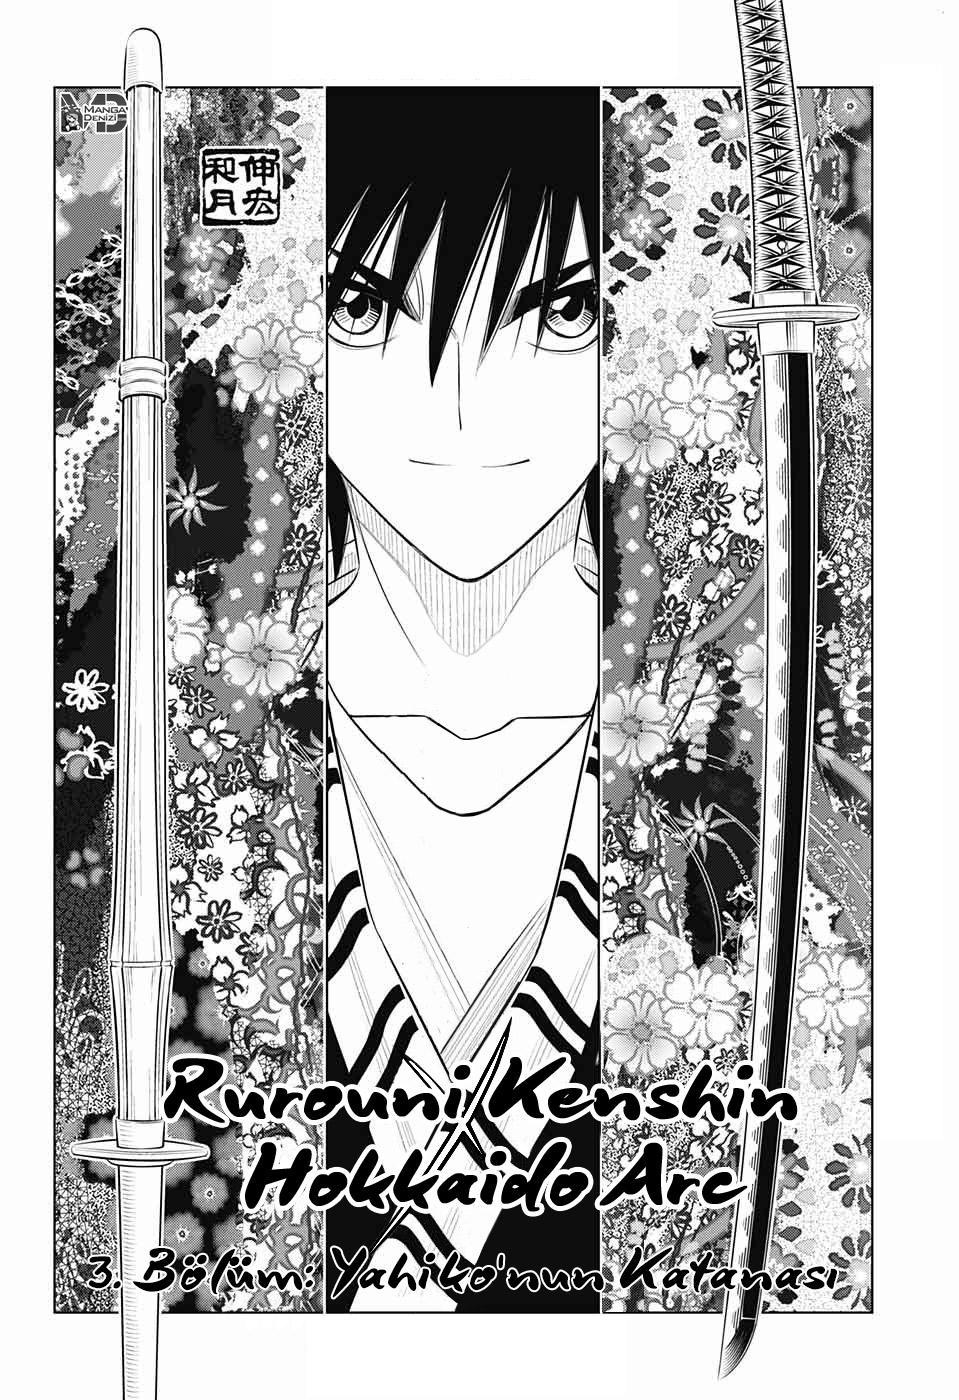 Rurouni Kenshin: Hokkaido Arc mangasının 03 bölümünün 3. sayfasını okuyorsunuz.